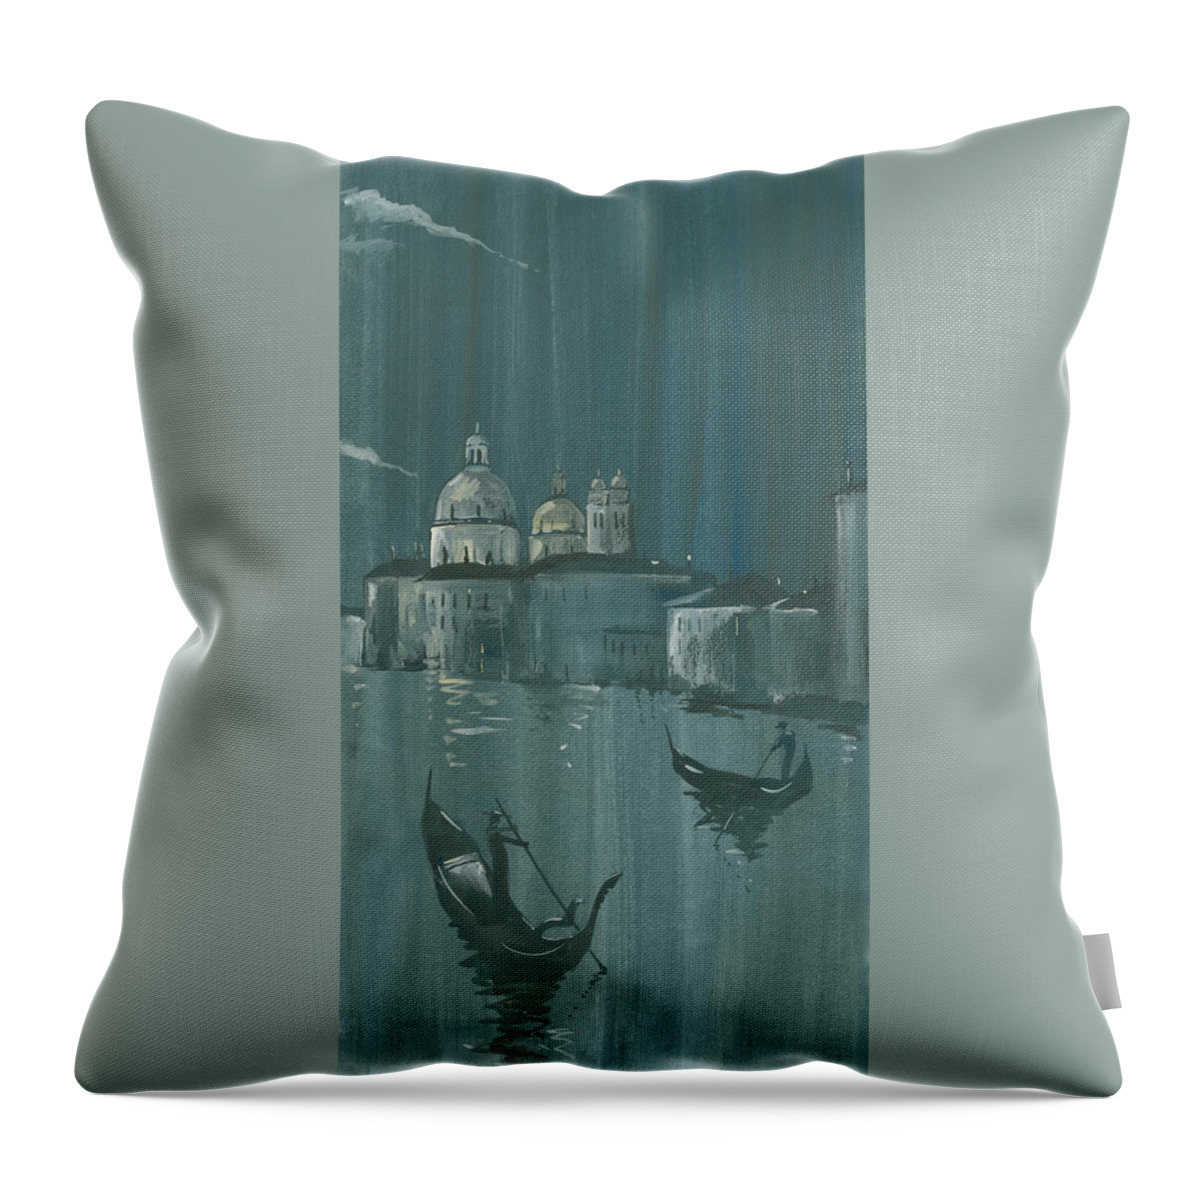 Painting Throw Pillow featuring the painting Night in Venice. Gondolas by Igor Sakurov